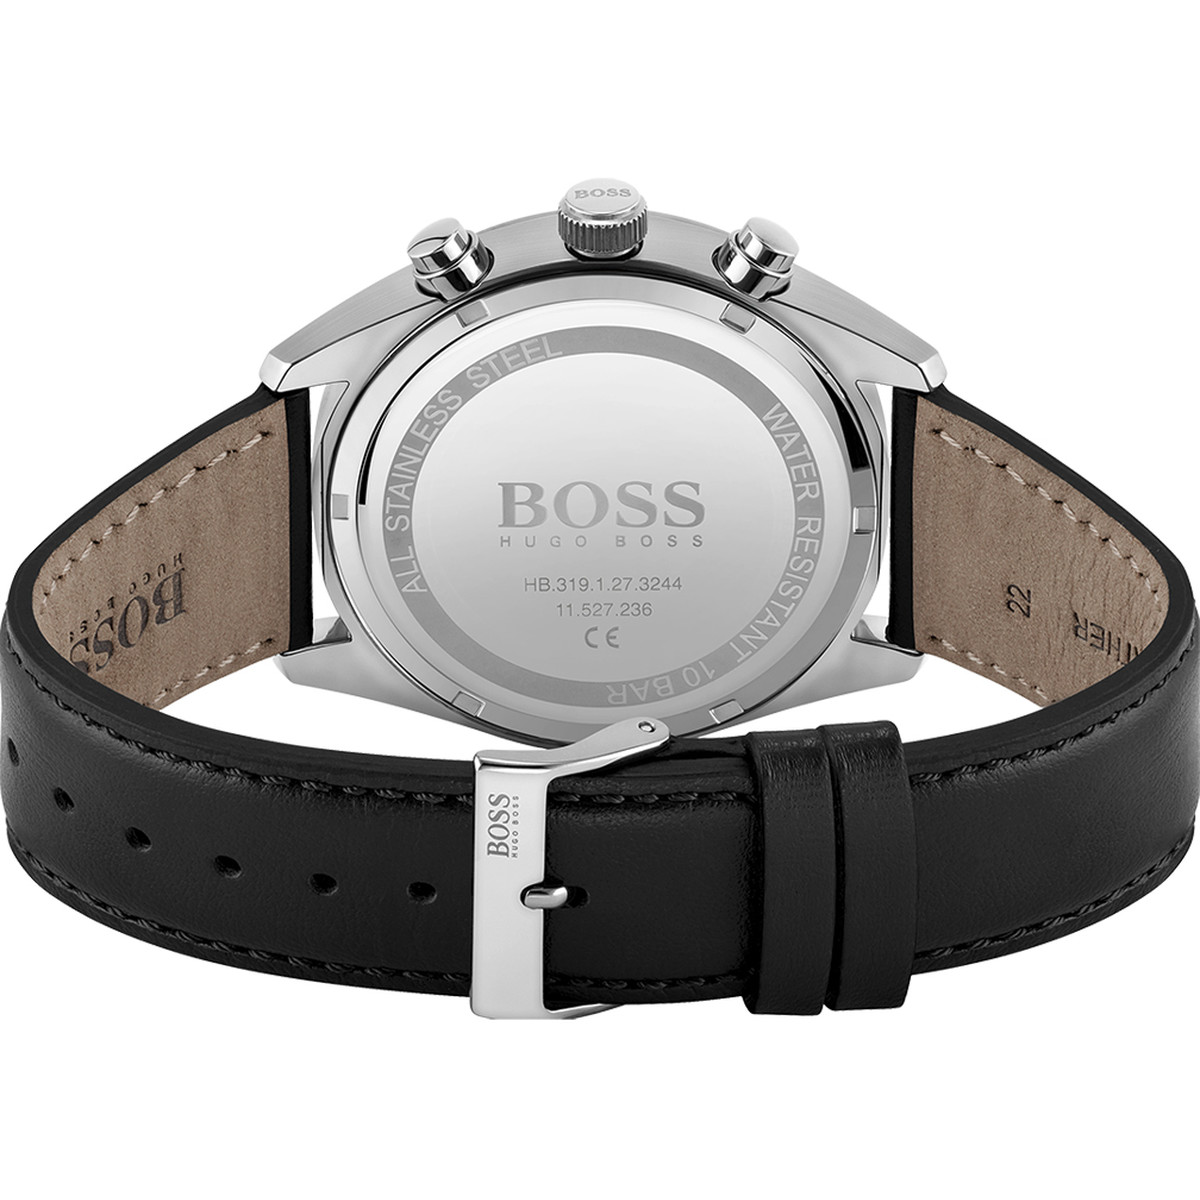 Montre Hugo Boss homme acier bracelet cuir noir - vue 3